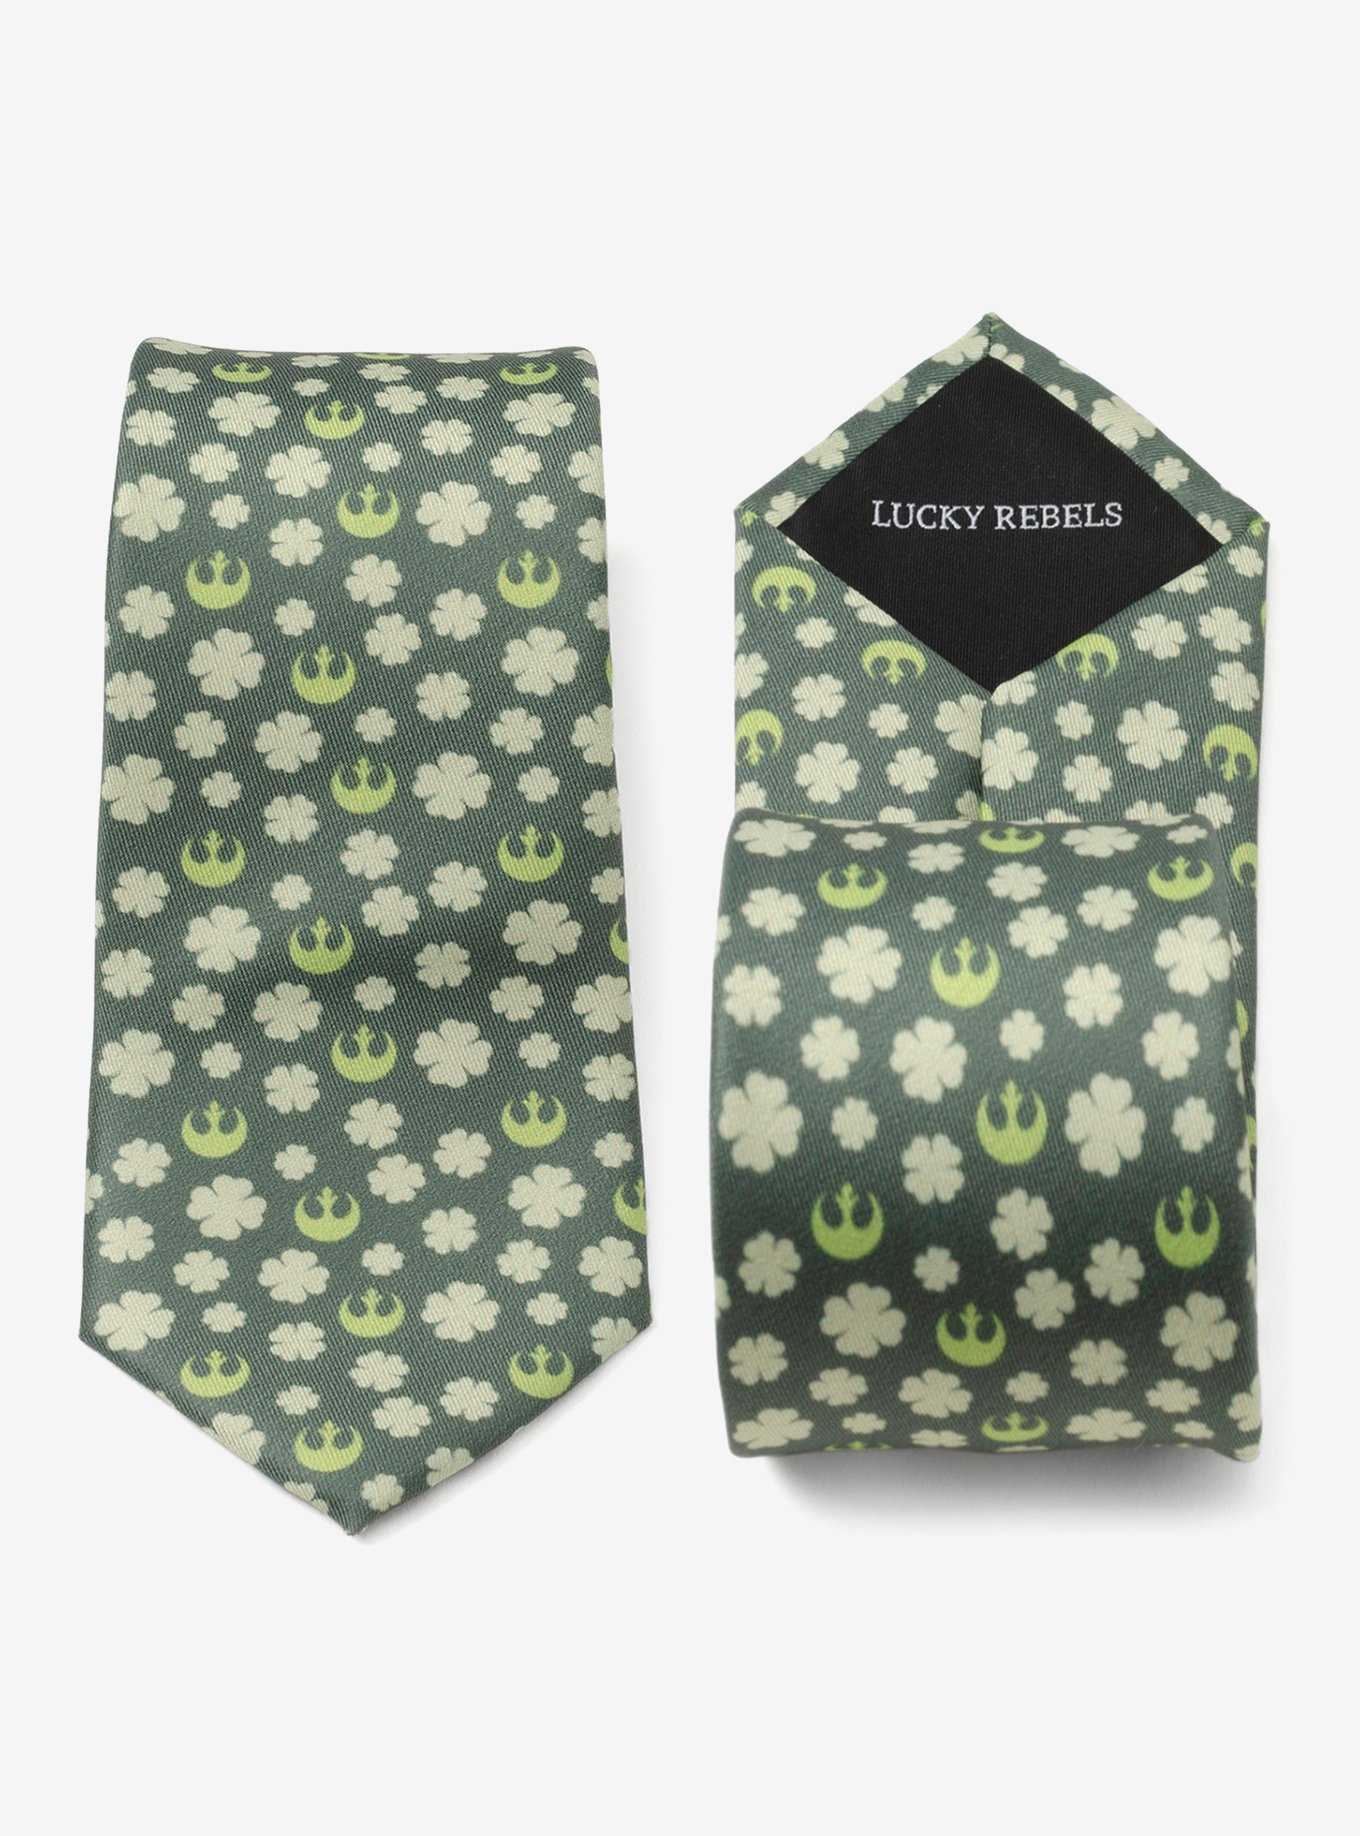 Star Wars Rebel Shamrock Lucky Rebels Green Men's Tie, , hi-res